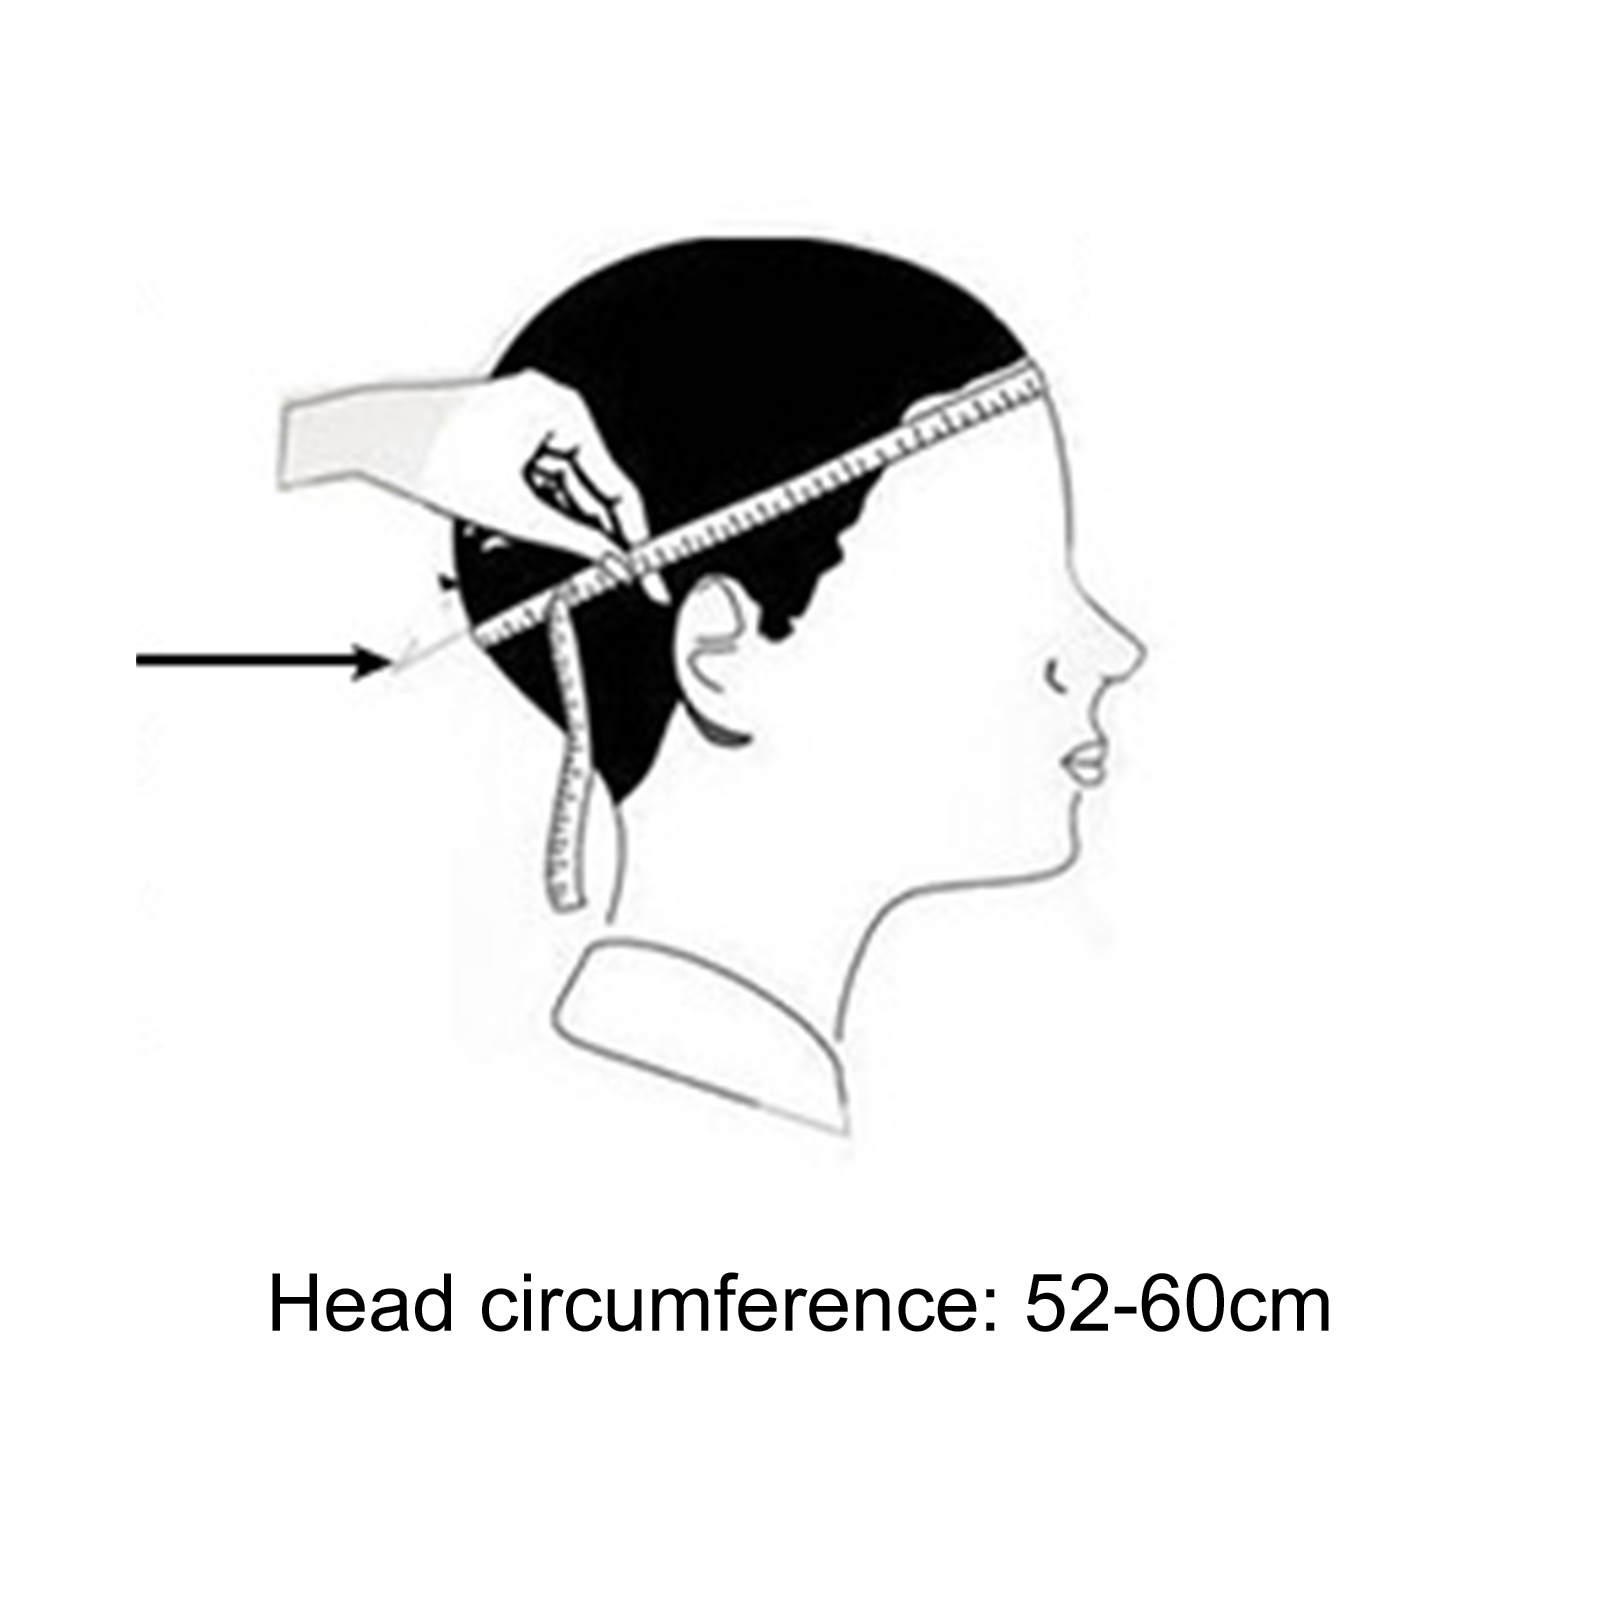 измерение окружности головы груди размеров родничка фото 106